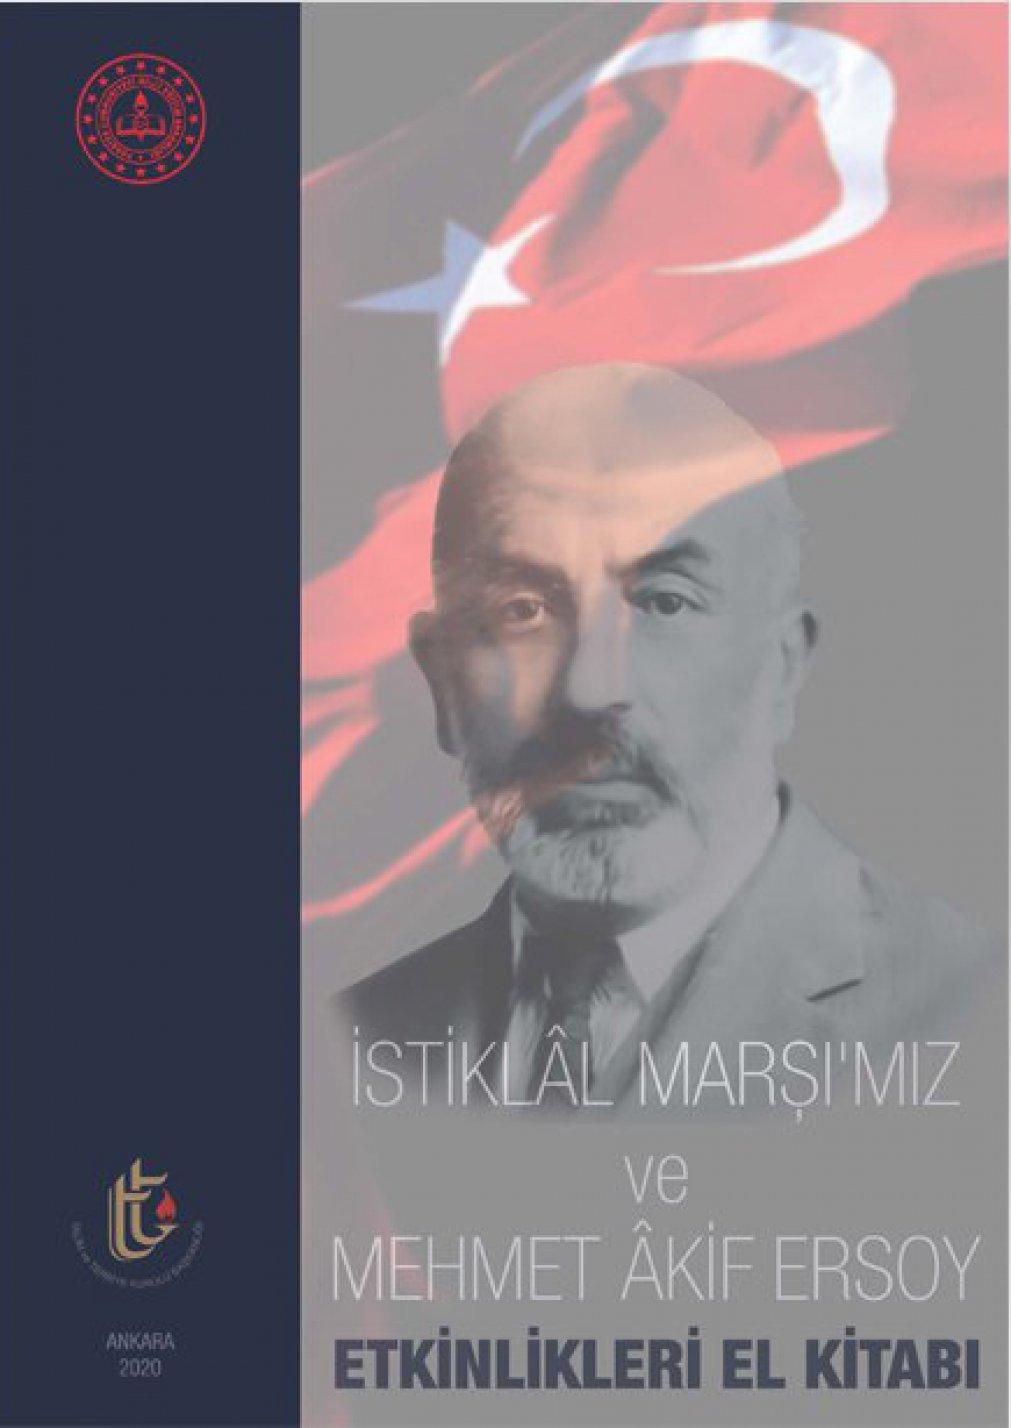 İstiklâl Marşı'mız ve Mehmet Akif Ersoy Etkinlik El Kitabı